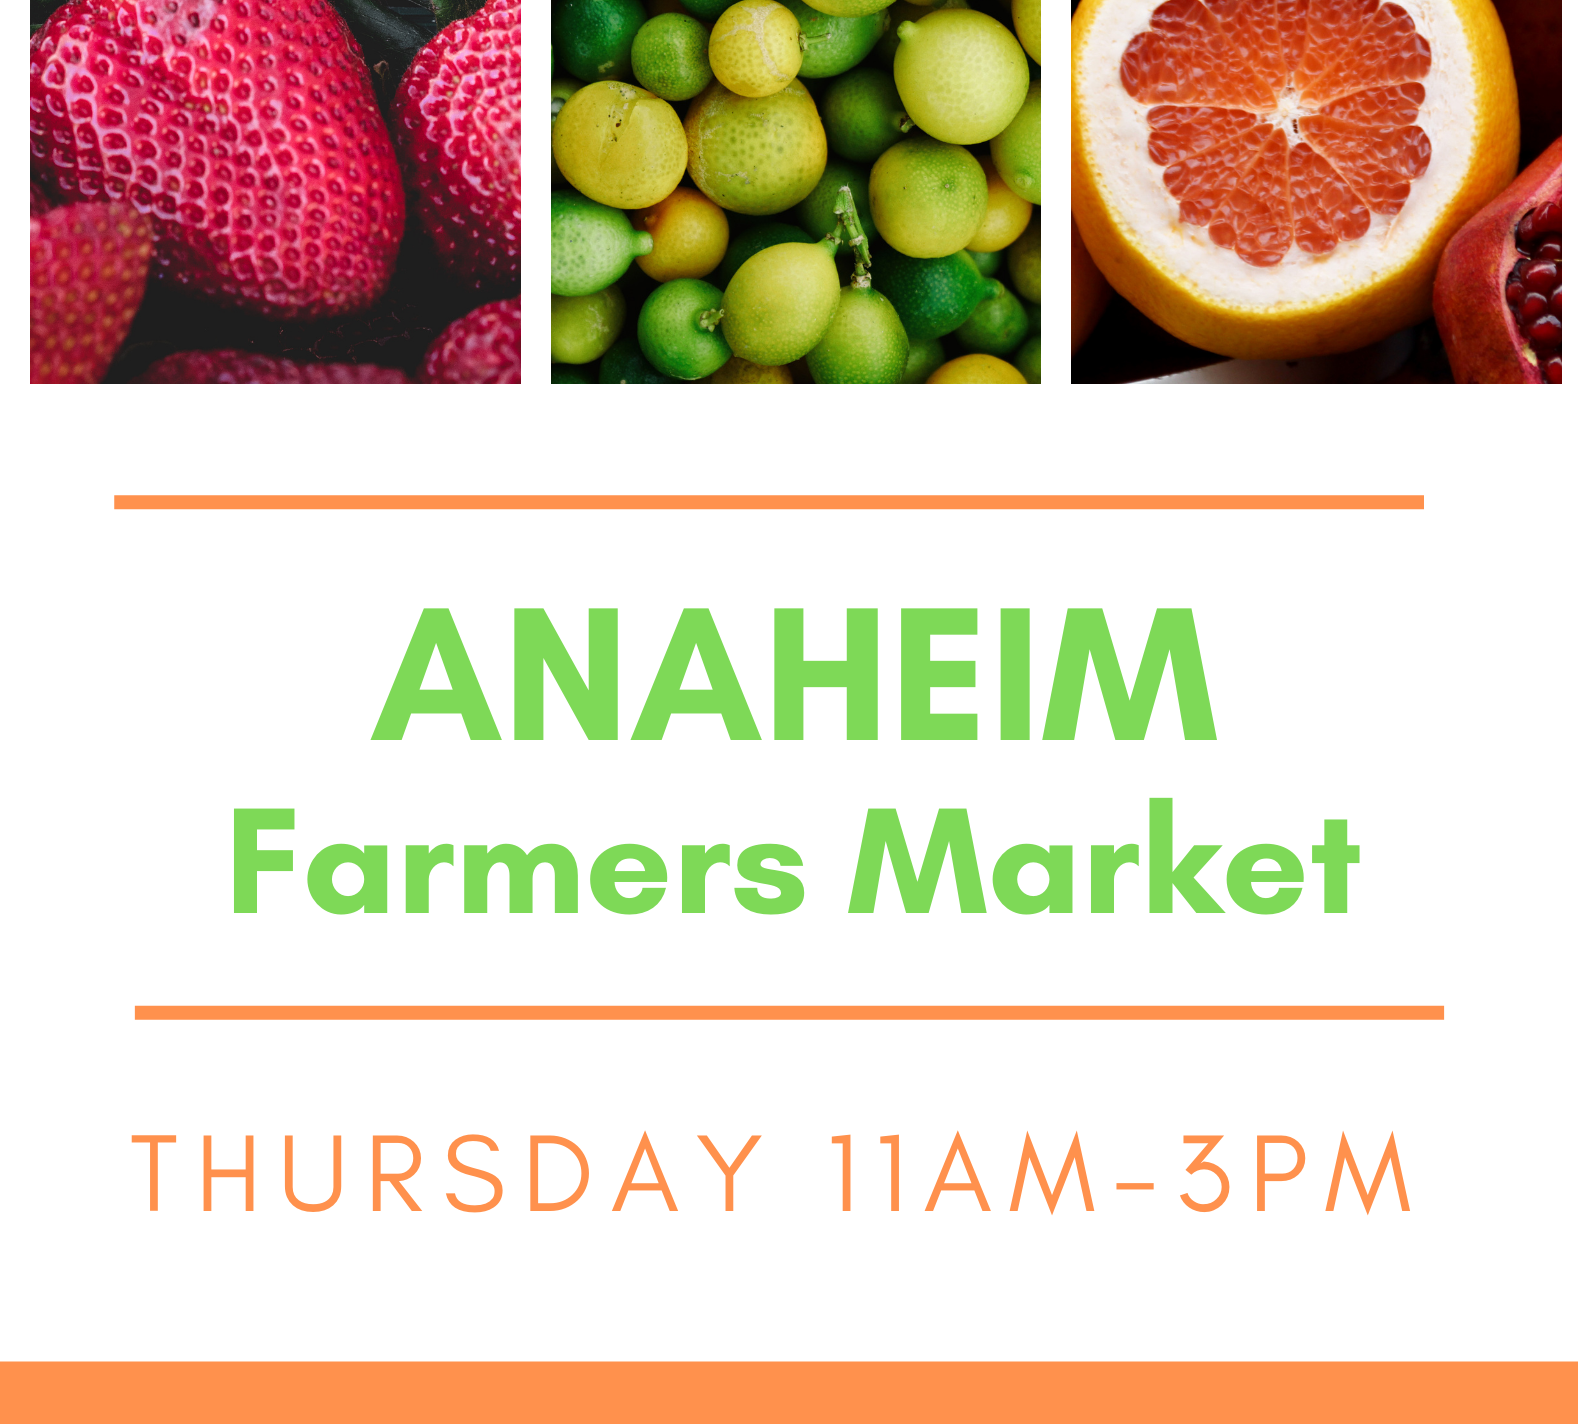 Downtown Anaheim Farmers Market